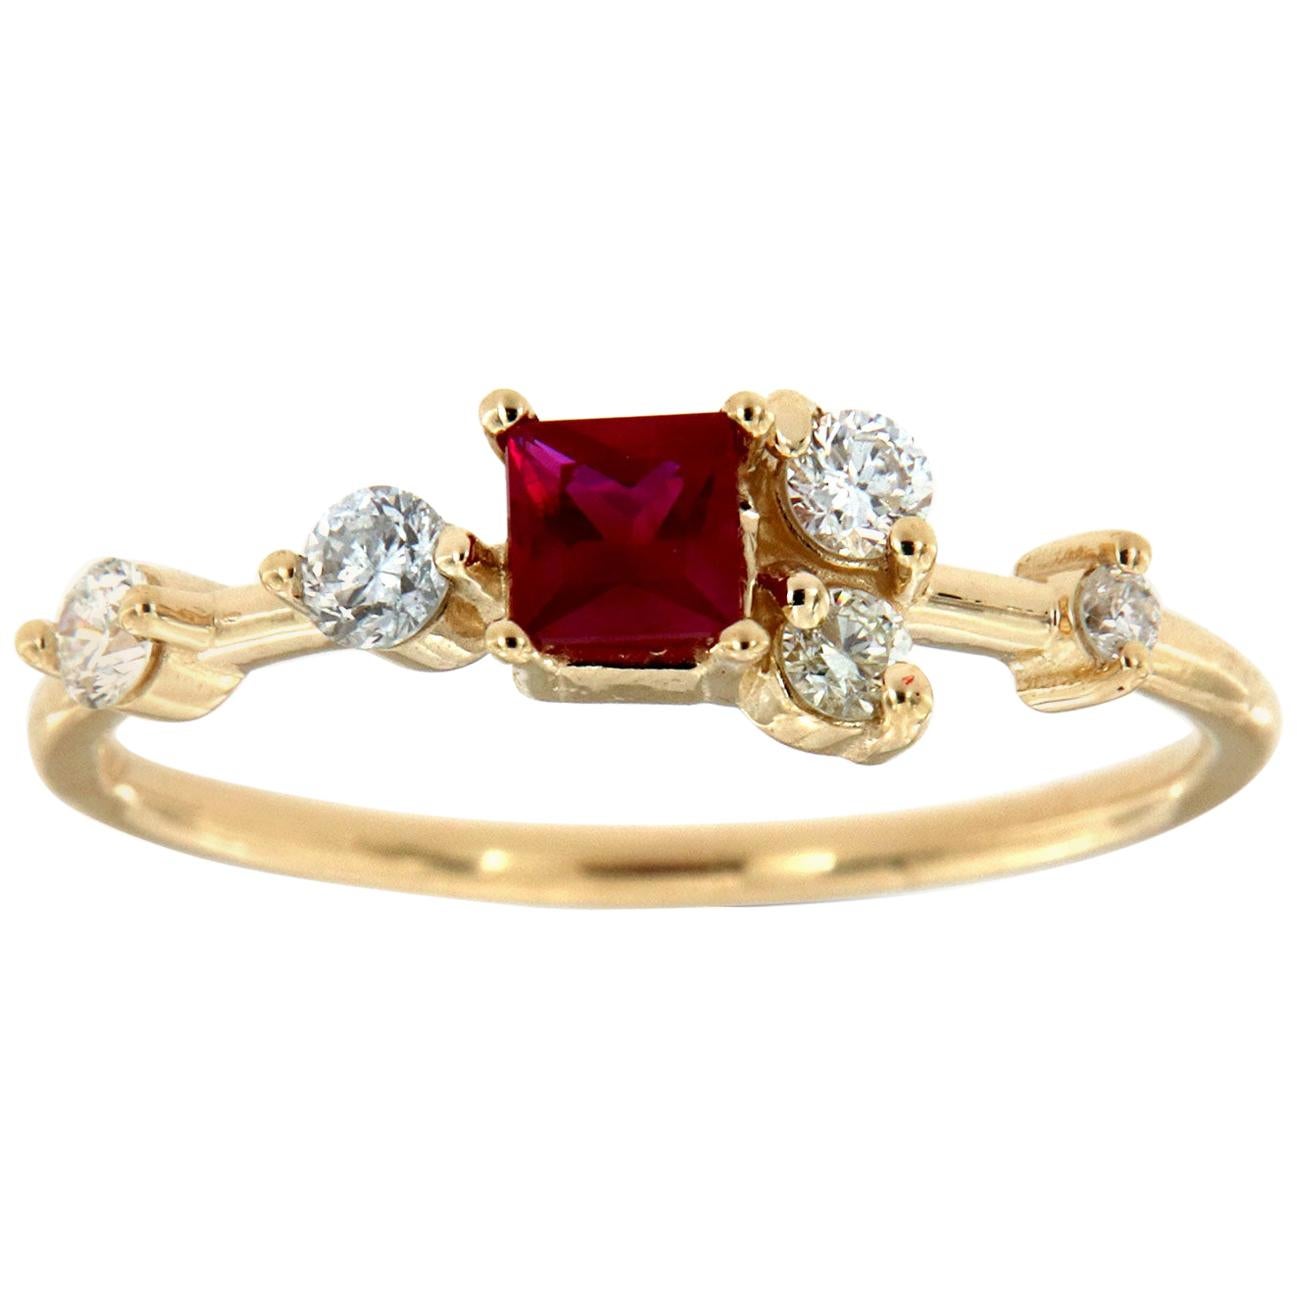 Einzigartiger organischer roter quadratischer Rubin-Diamant-Ring aus 18 Karat Gelbgold mit 0,27 Karat